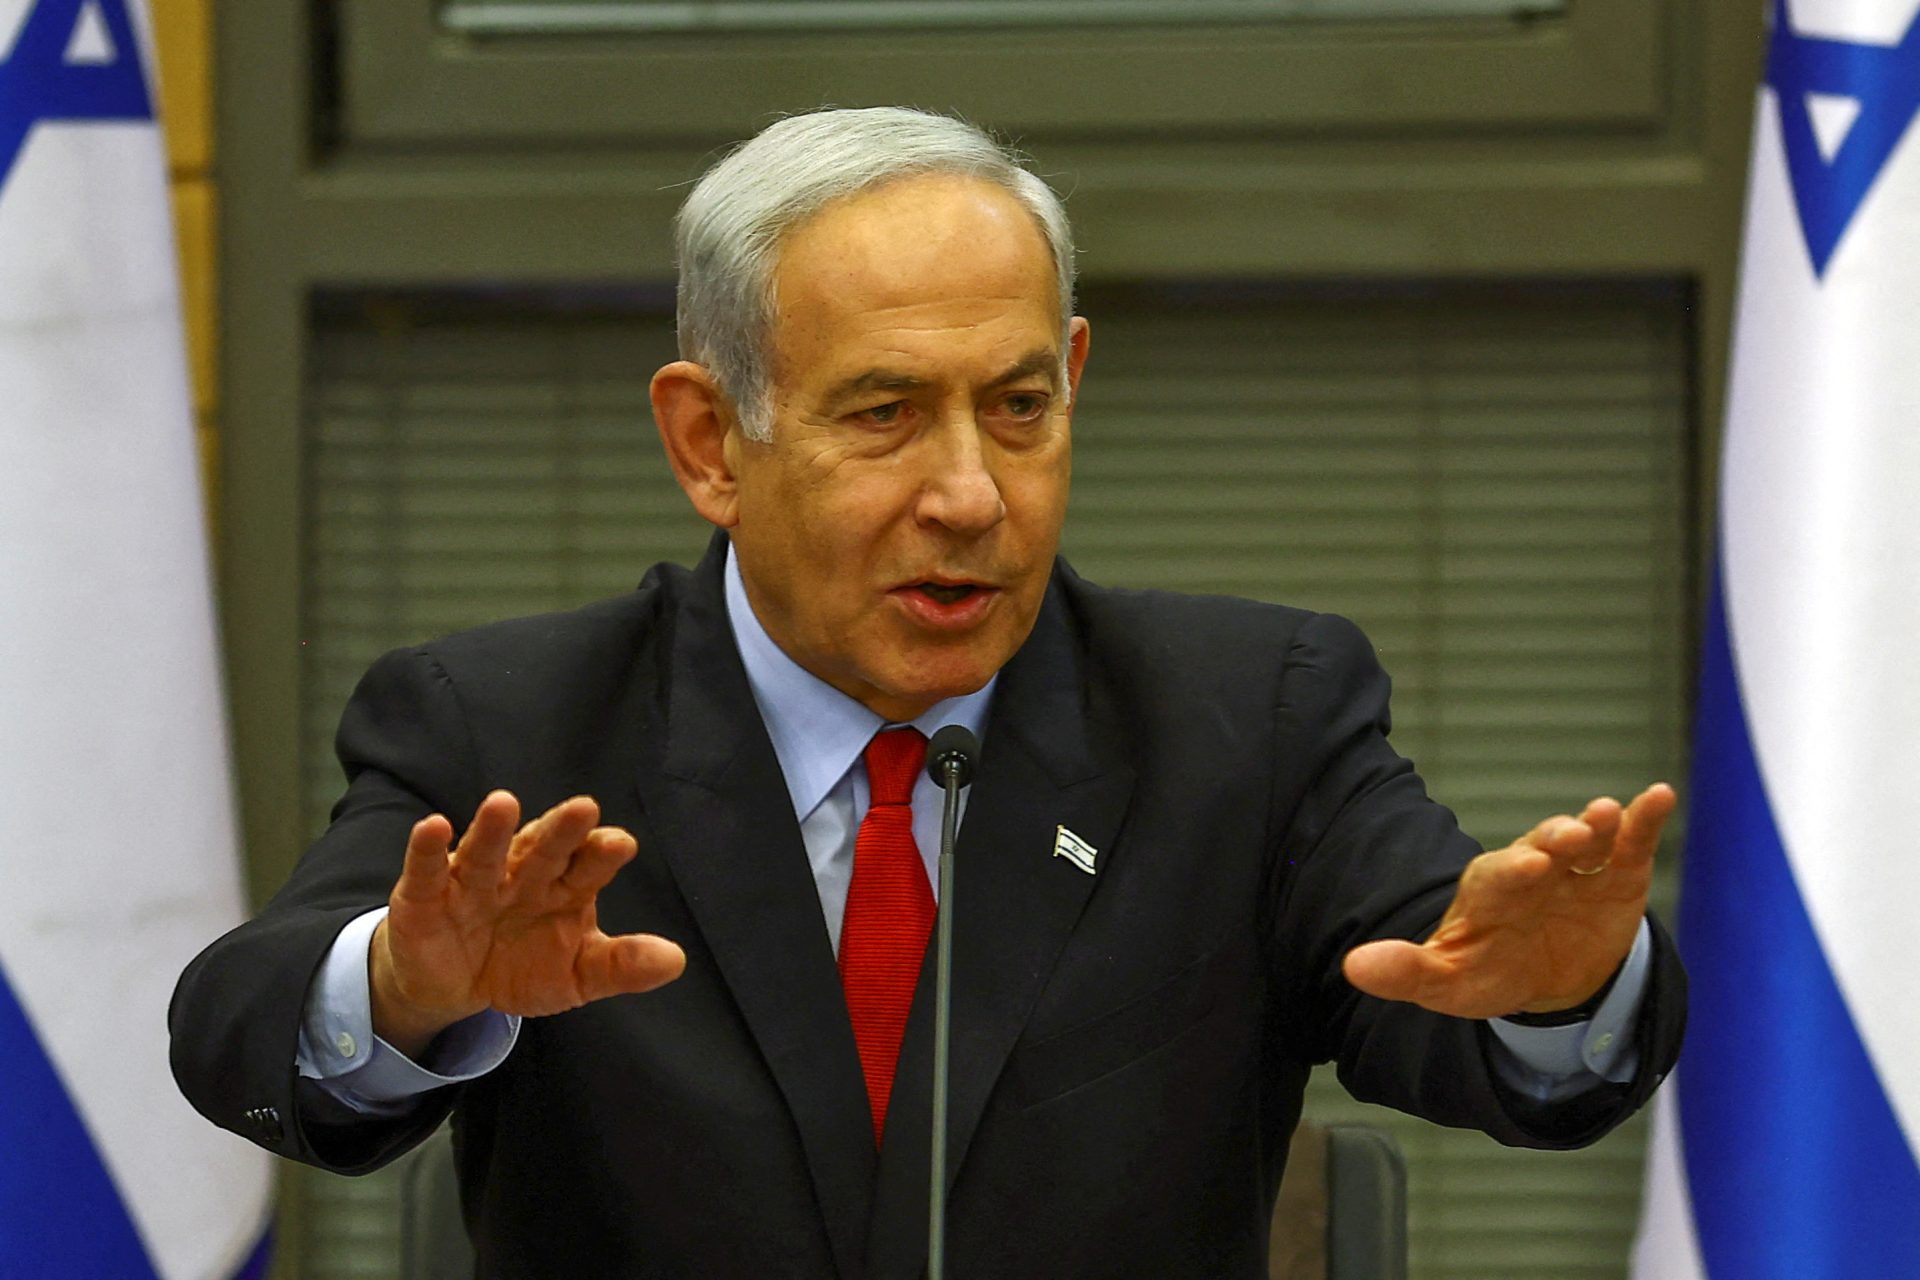 Netanyahu Israël vise l'autonomie dans la production d'armes